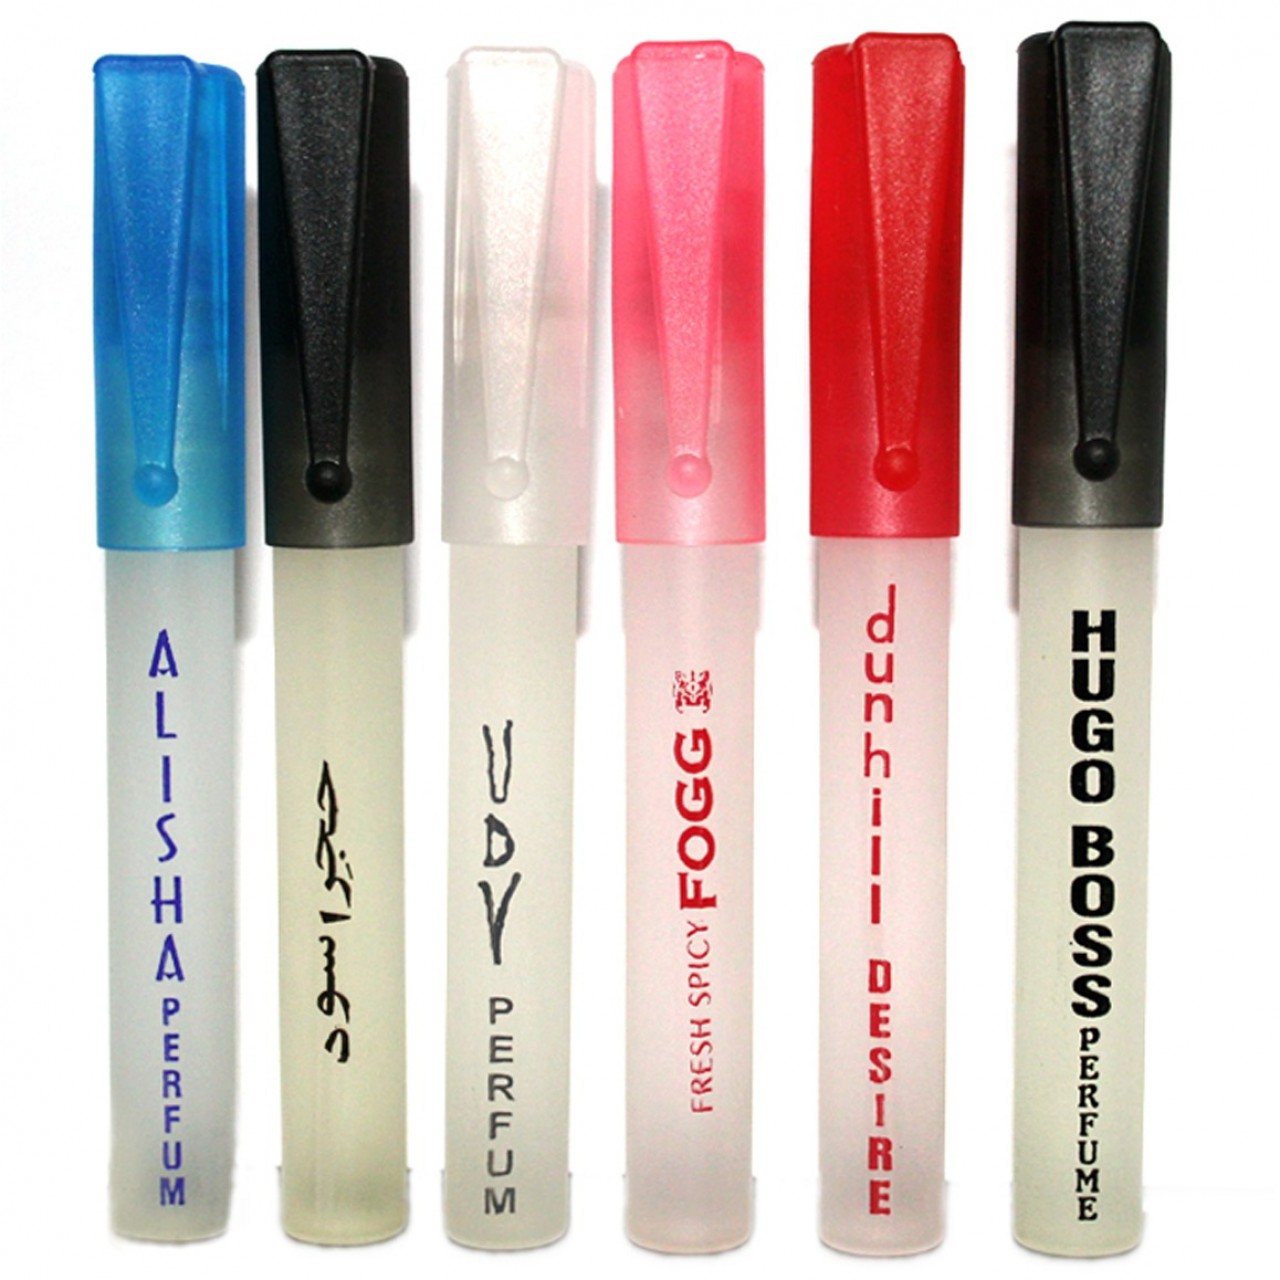 Pack of 6 - Multi Fragrance Pen Perfume For Unisex - 10 ml Each